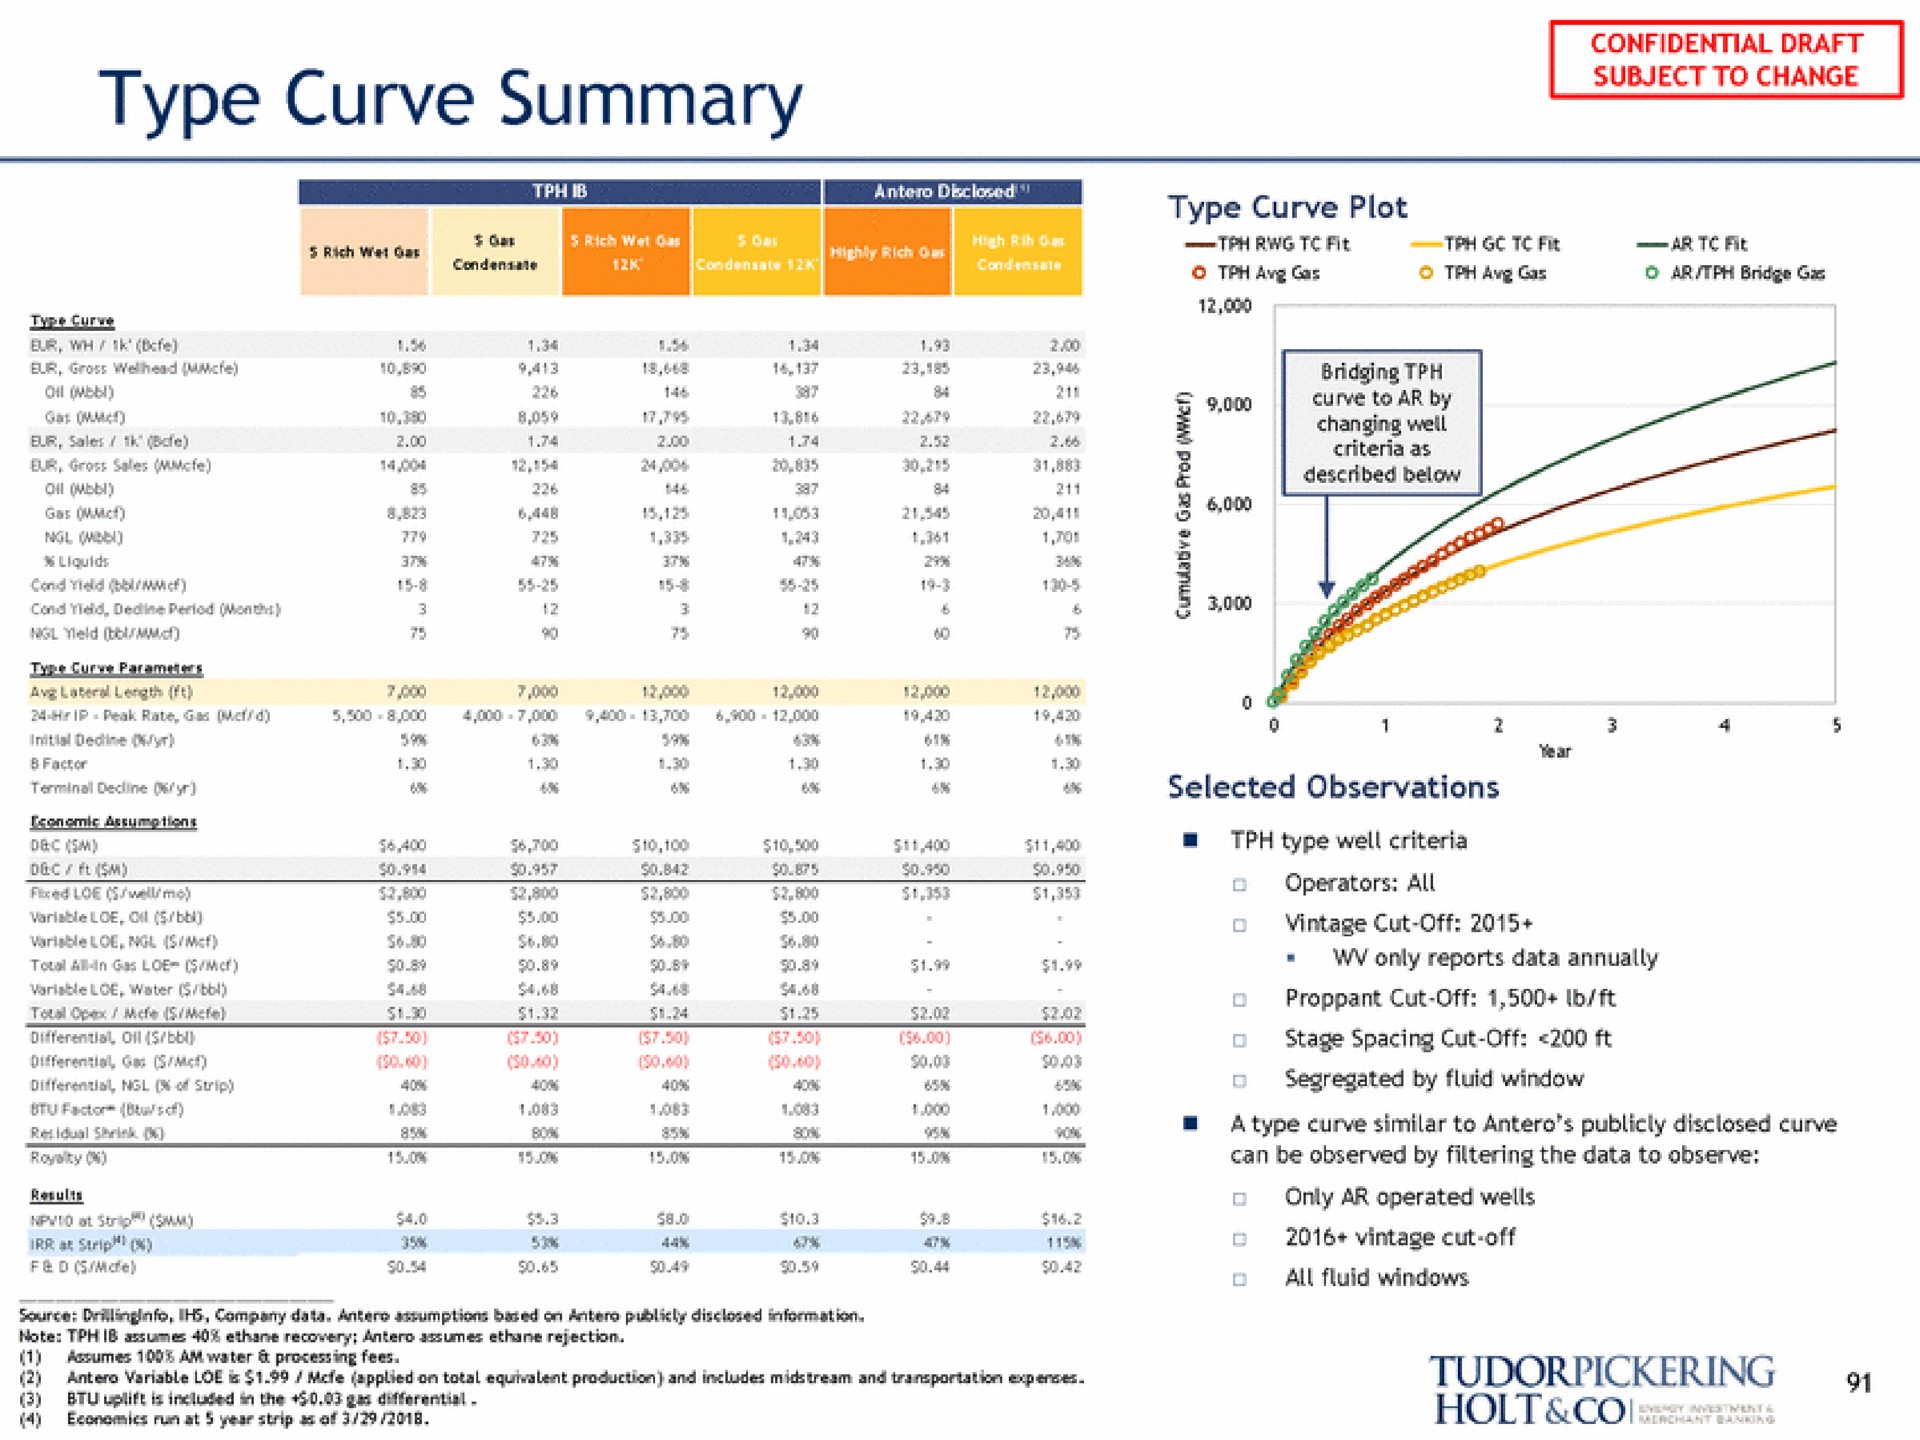 type curve summary | Tudor, Pickering, Holt & Co